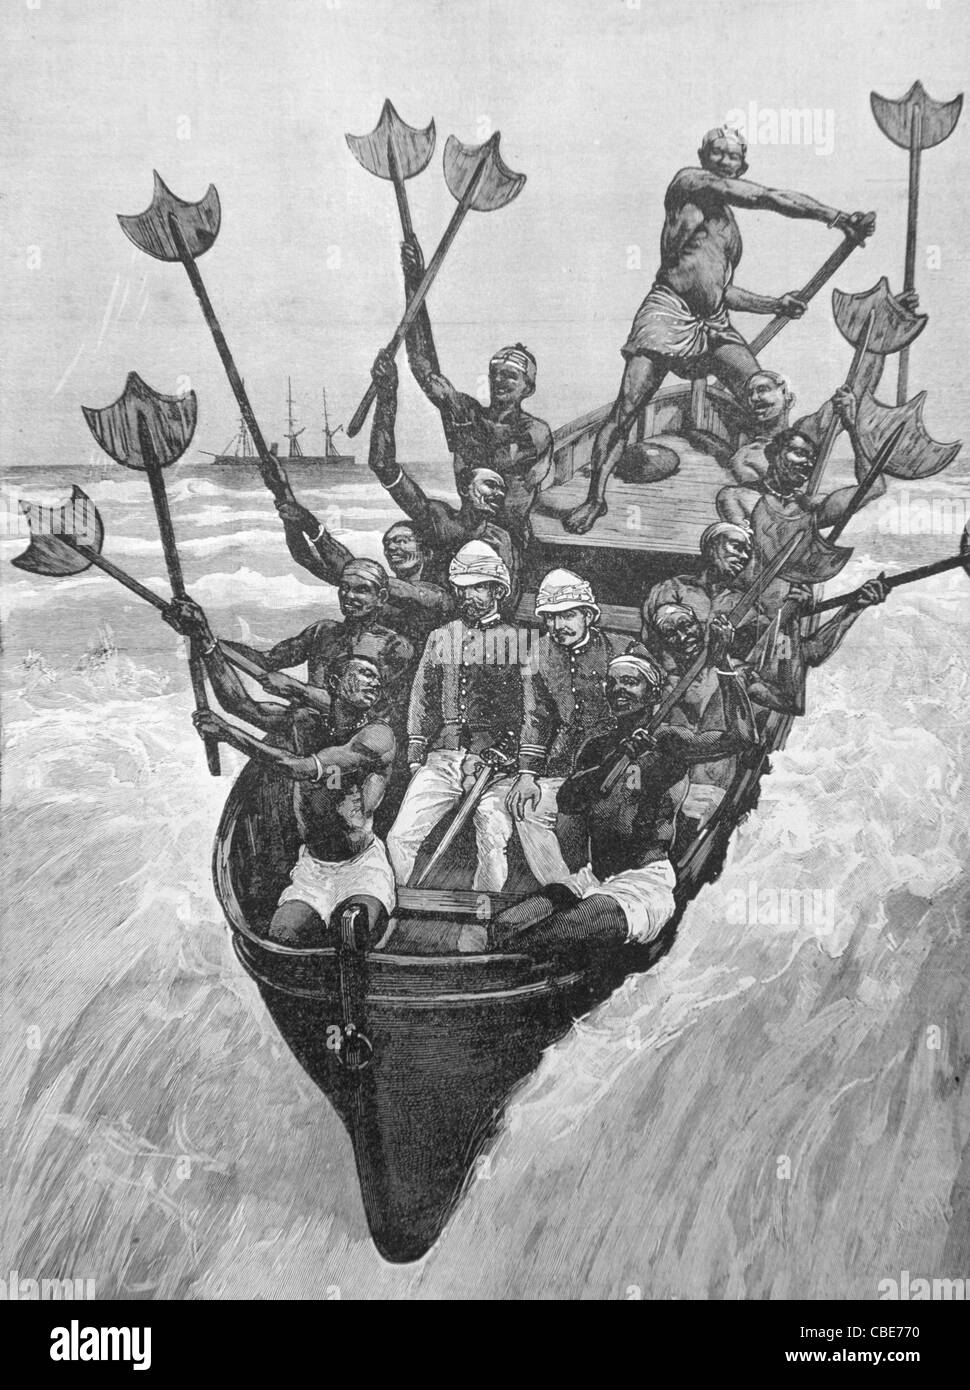 Gli ufficiali coloniali francesi arrivano sulla riva, addolciati dalla gente del posto, a Cotonou, Dahomey, ora Benin. 1892 incisione o illustrazione d'epoca Foto Stock